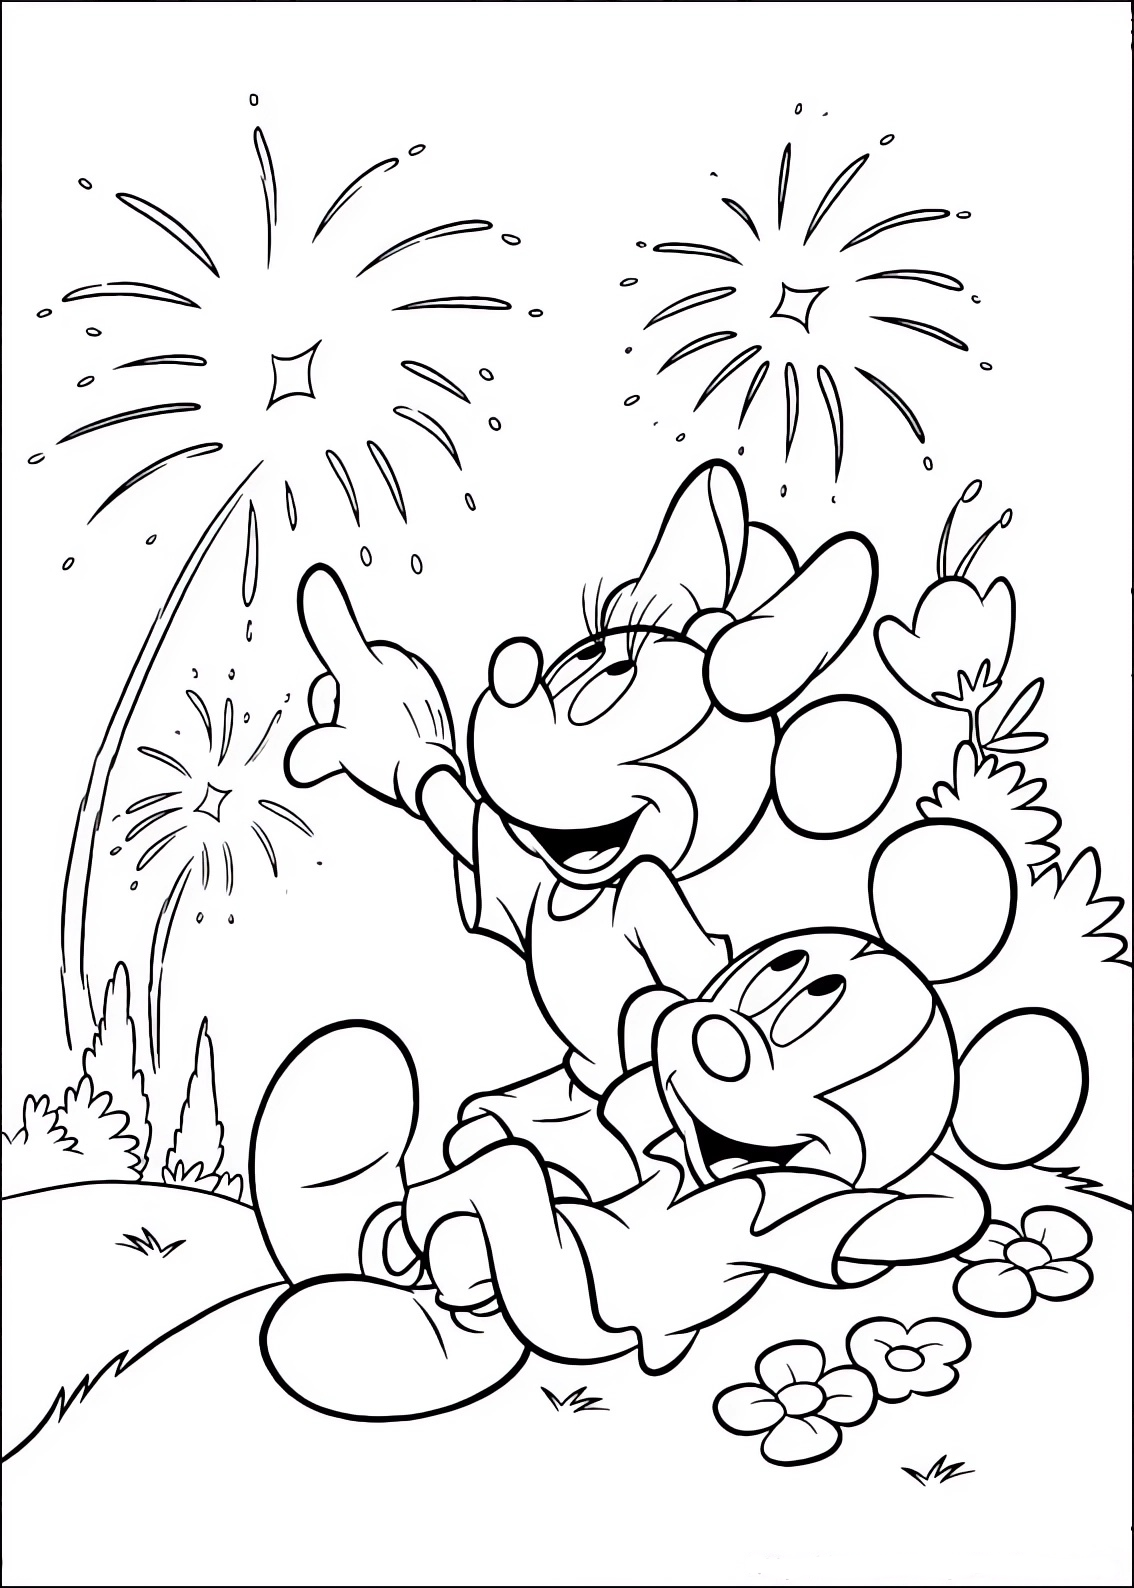 Malvorlage von Minnie und Mickey Mouse, die das Feuerwerk beobachten